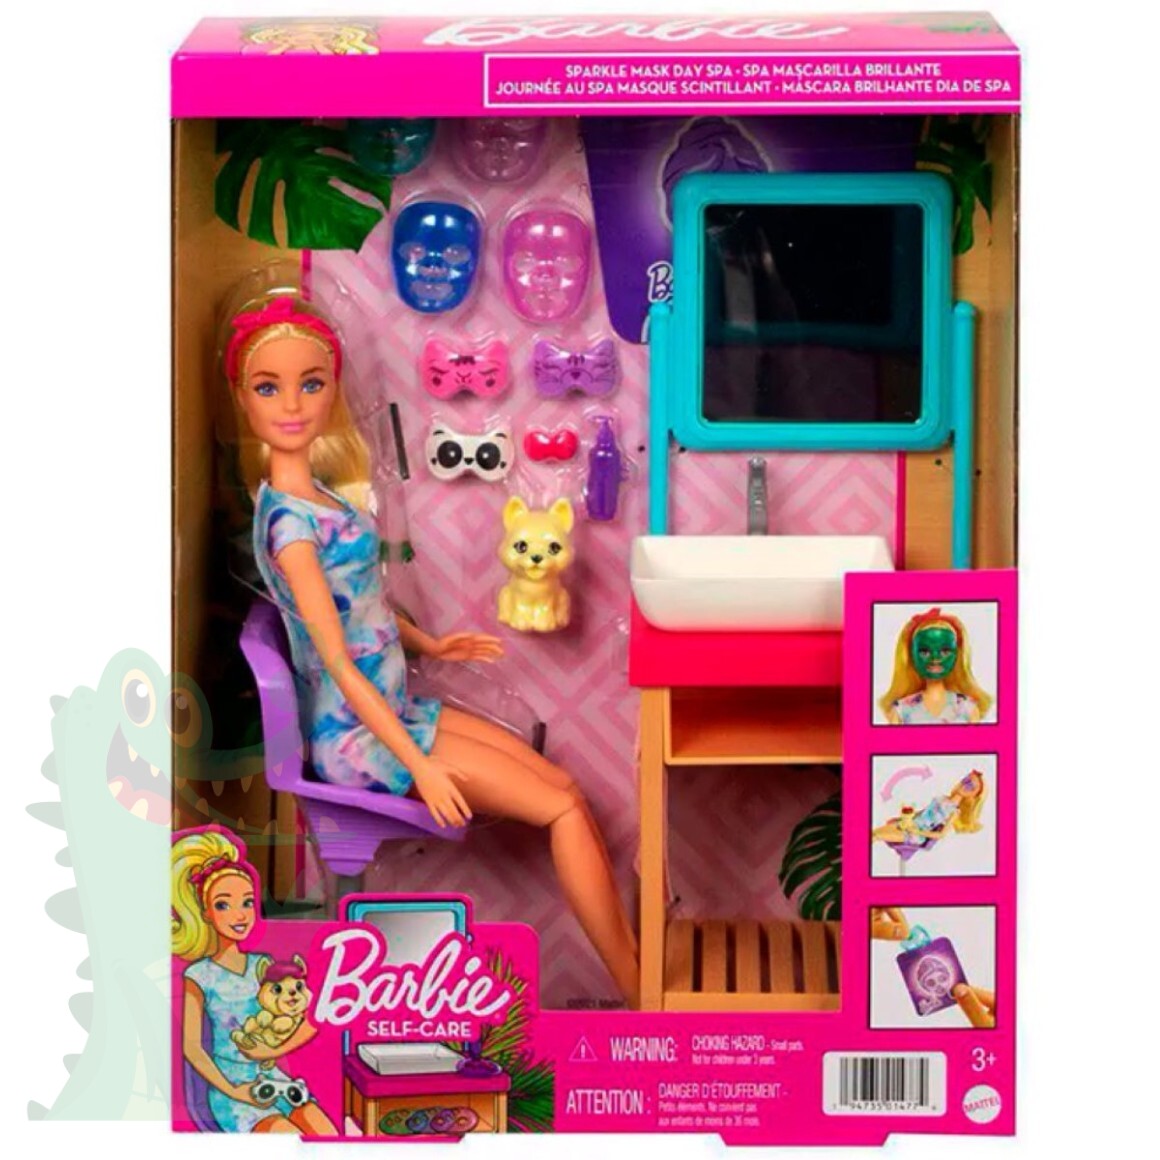 Jogo de cozinha da Barbie em crochê - Aula 222 (Parte 01) 